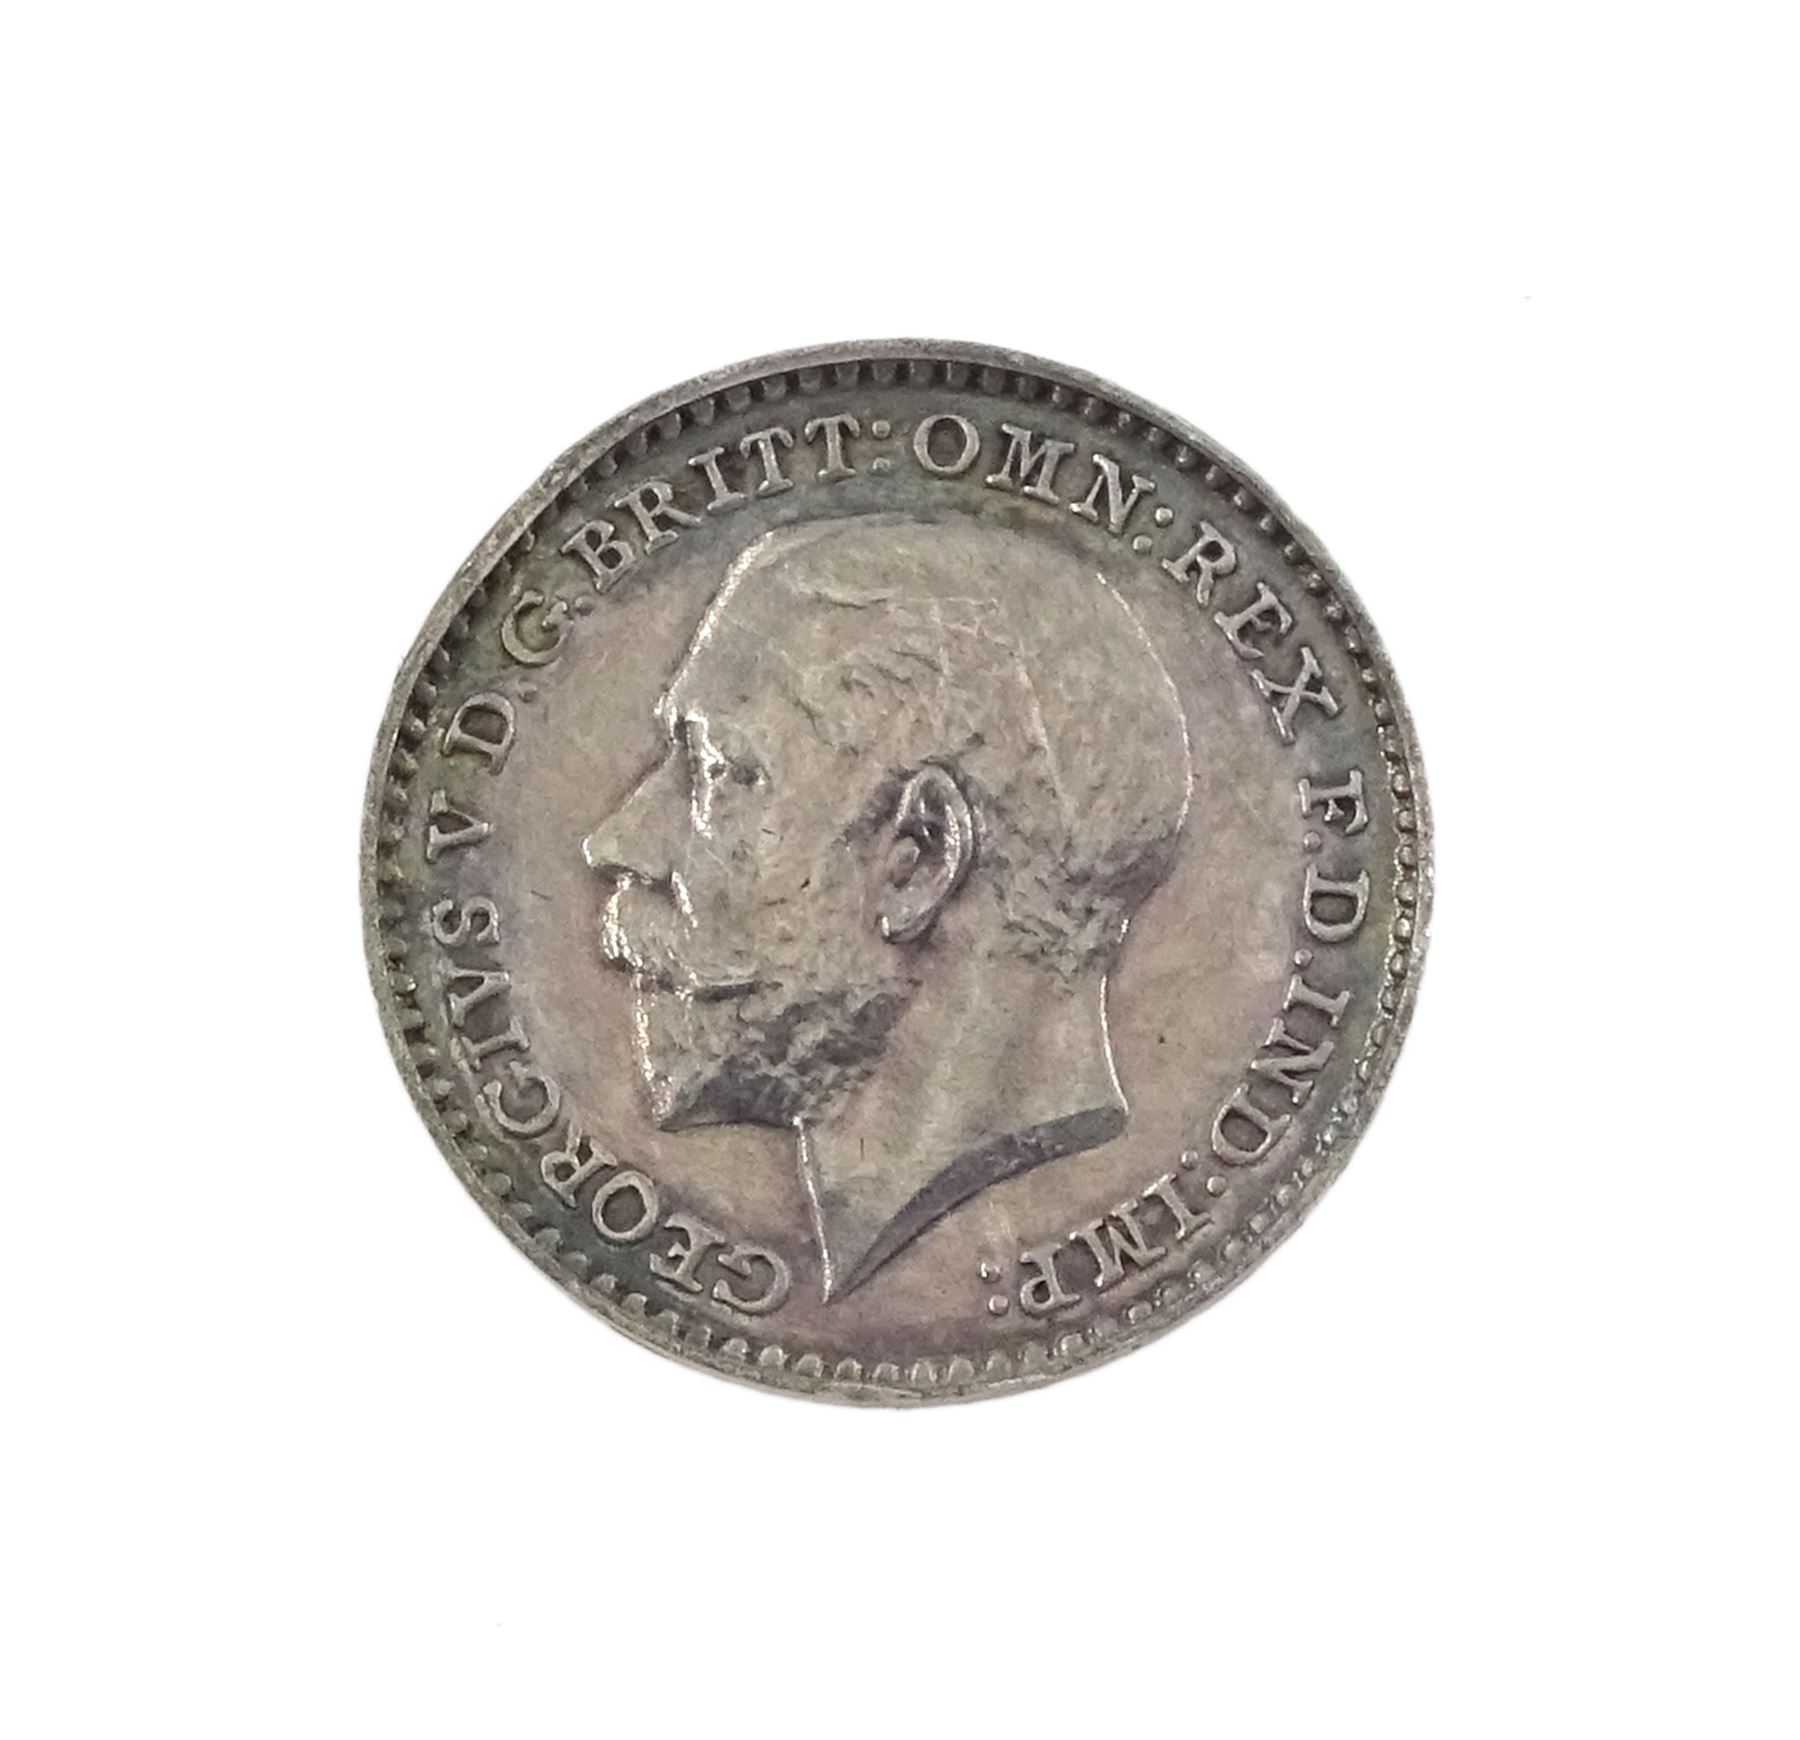 King George V 1911 proof short coin set - Image 22 of 24